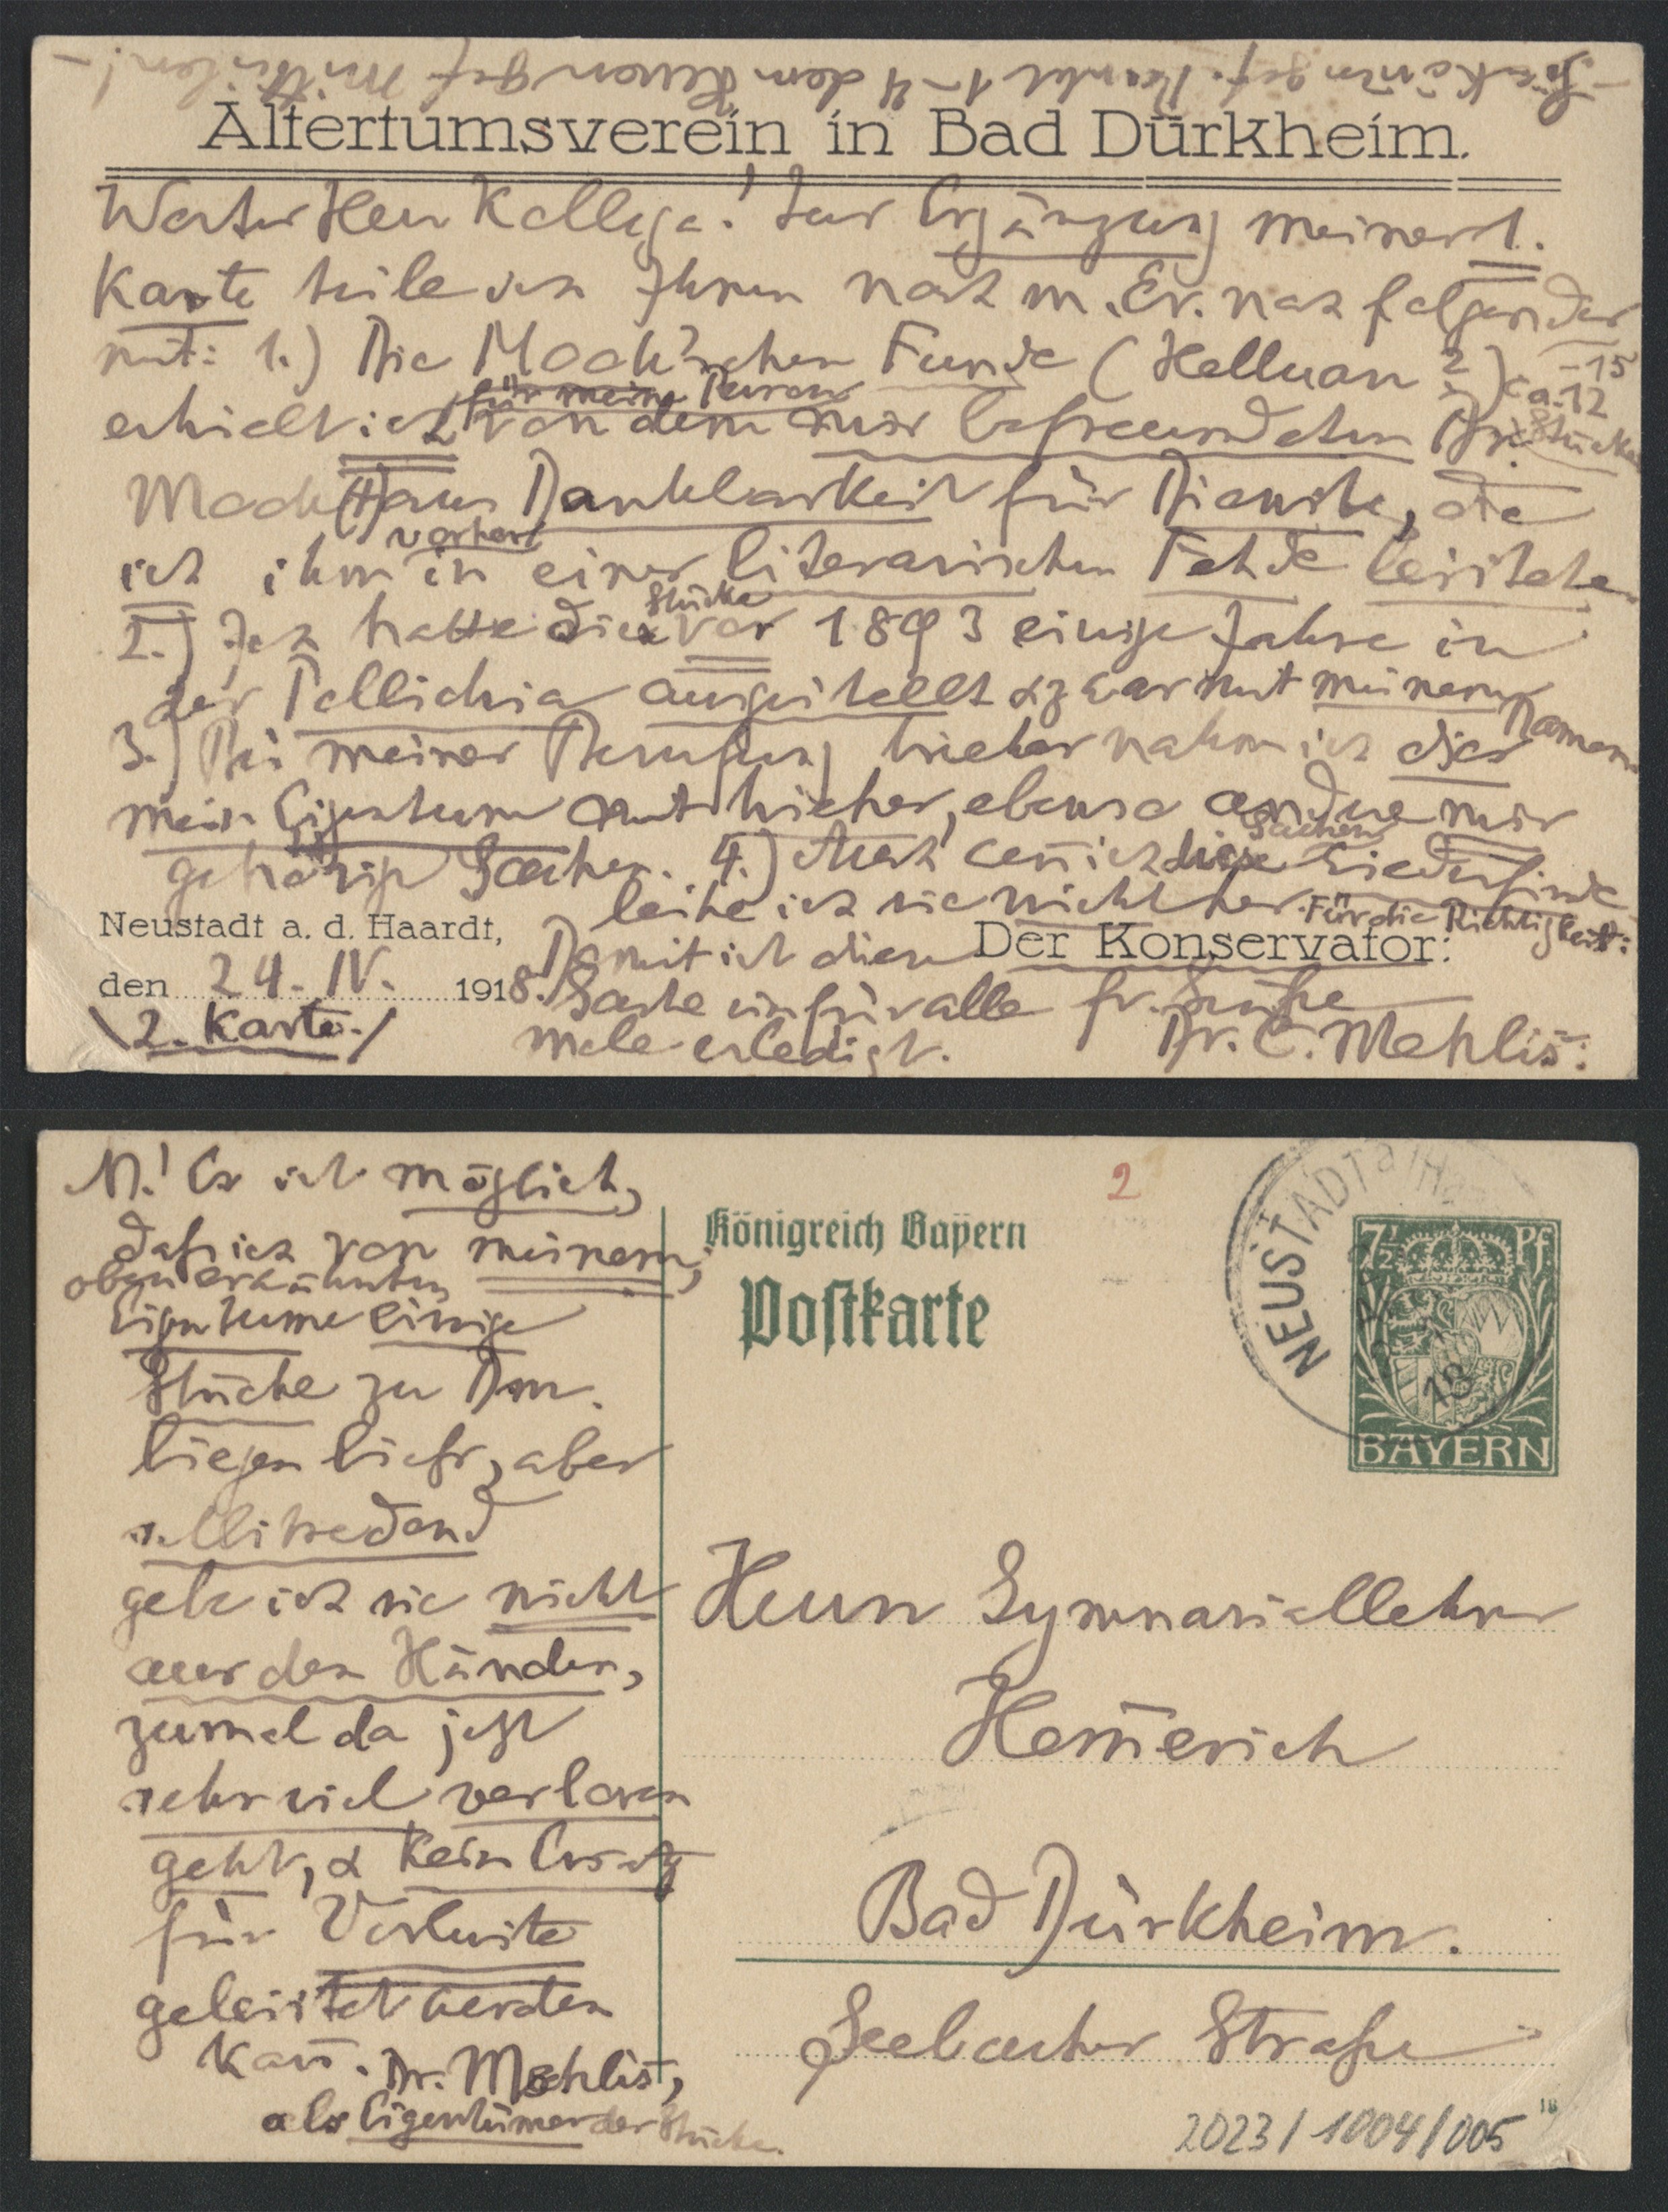 Postkarte von C. Mehlis an Hemmerich (2 Seiten) (Stadtmuseum Bad Dürkheim im Kulturzentrum Haus Catoir CC BY-NC-SA)